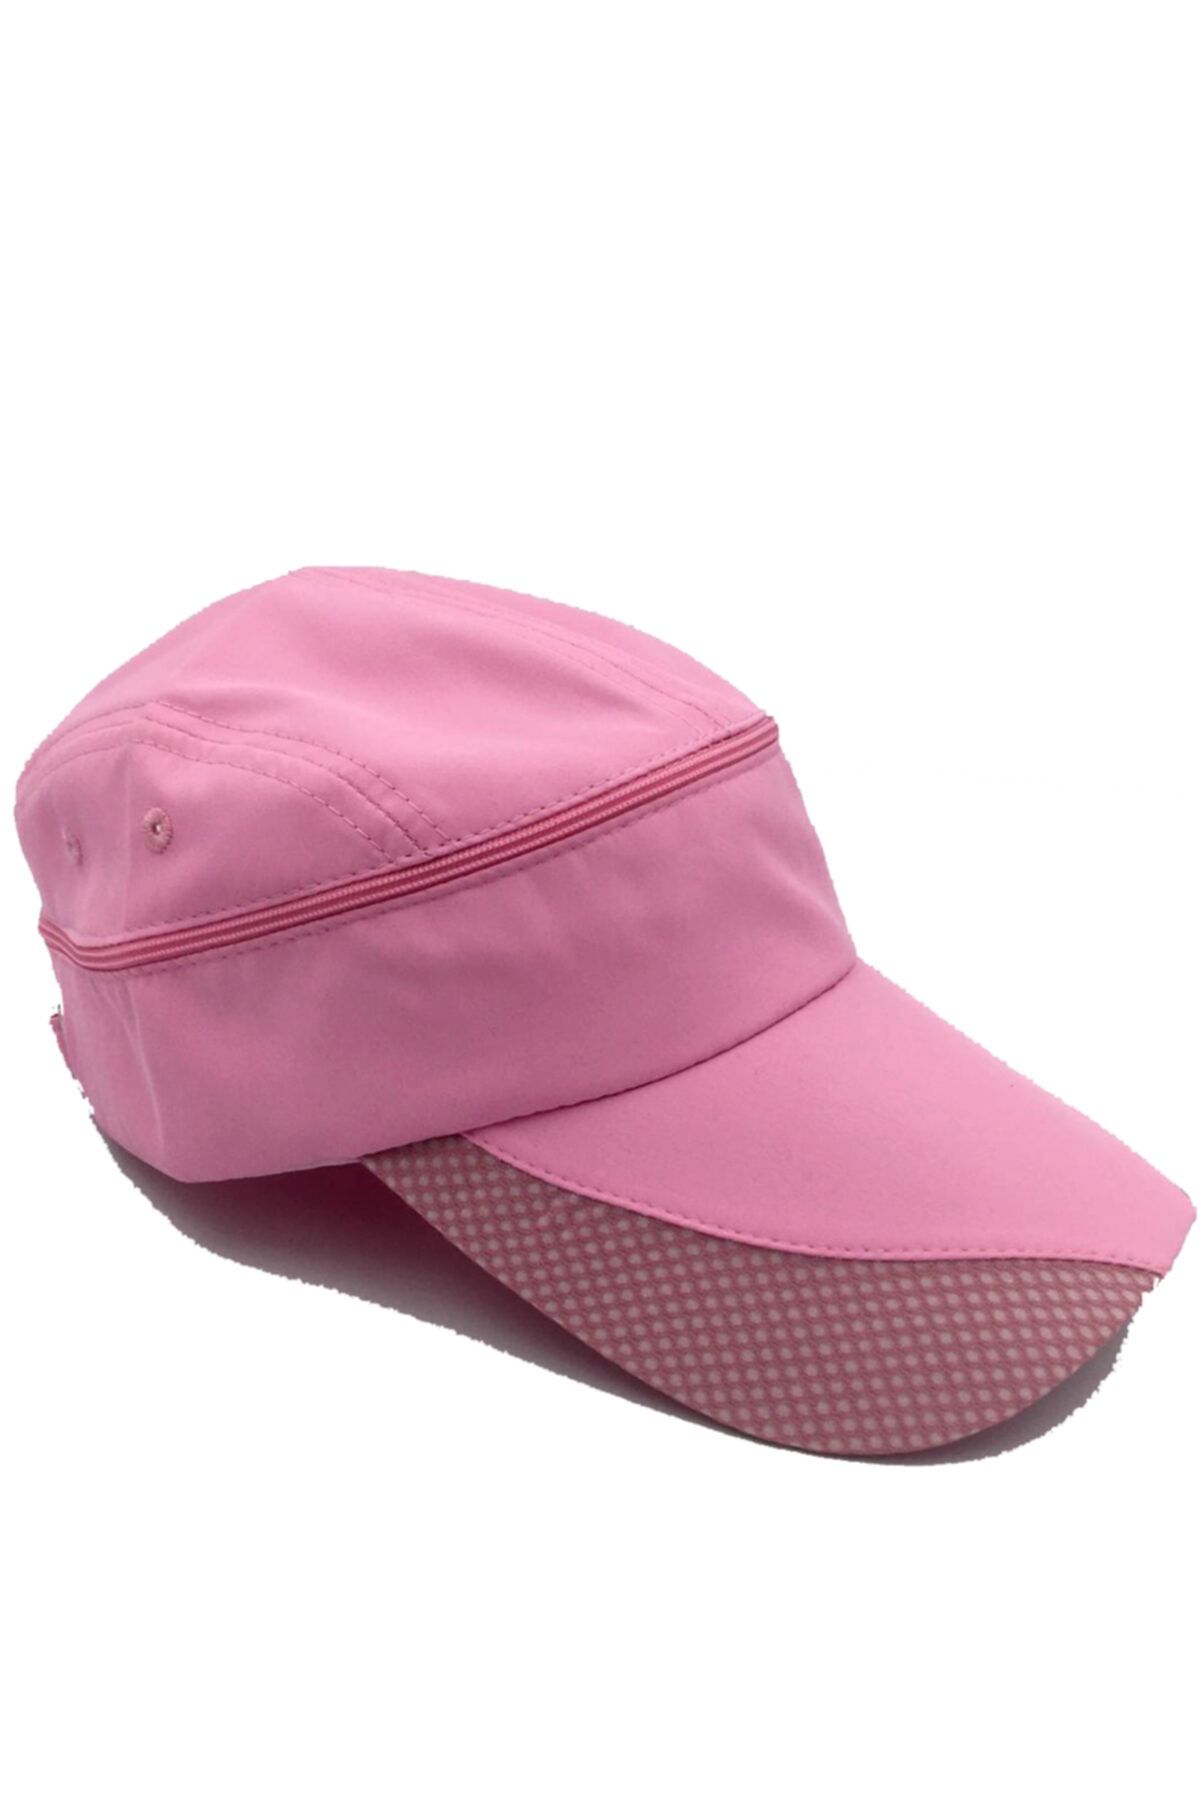 İşnar Unisex Uv Koruyucu Vizör Kasket Siperlik Tenis-koşu-sporcu Şapka